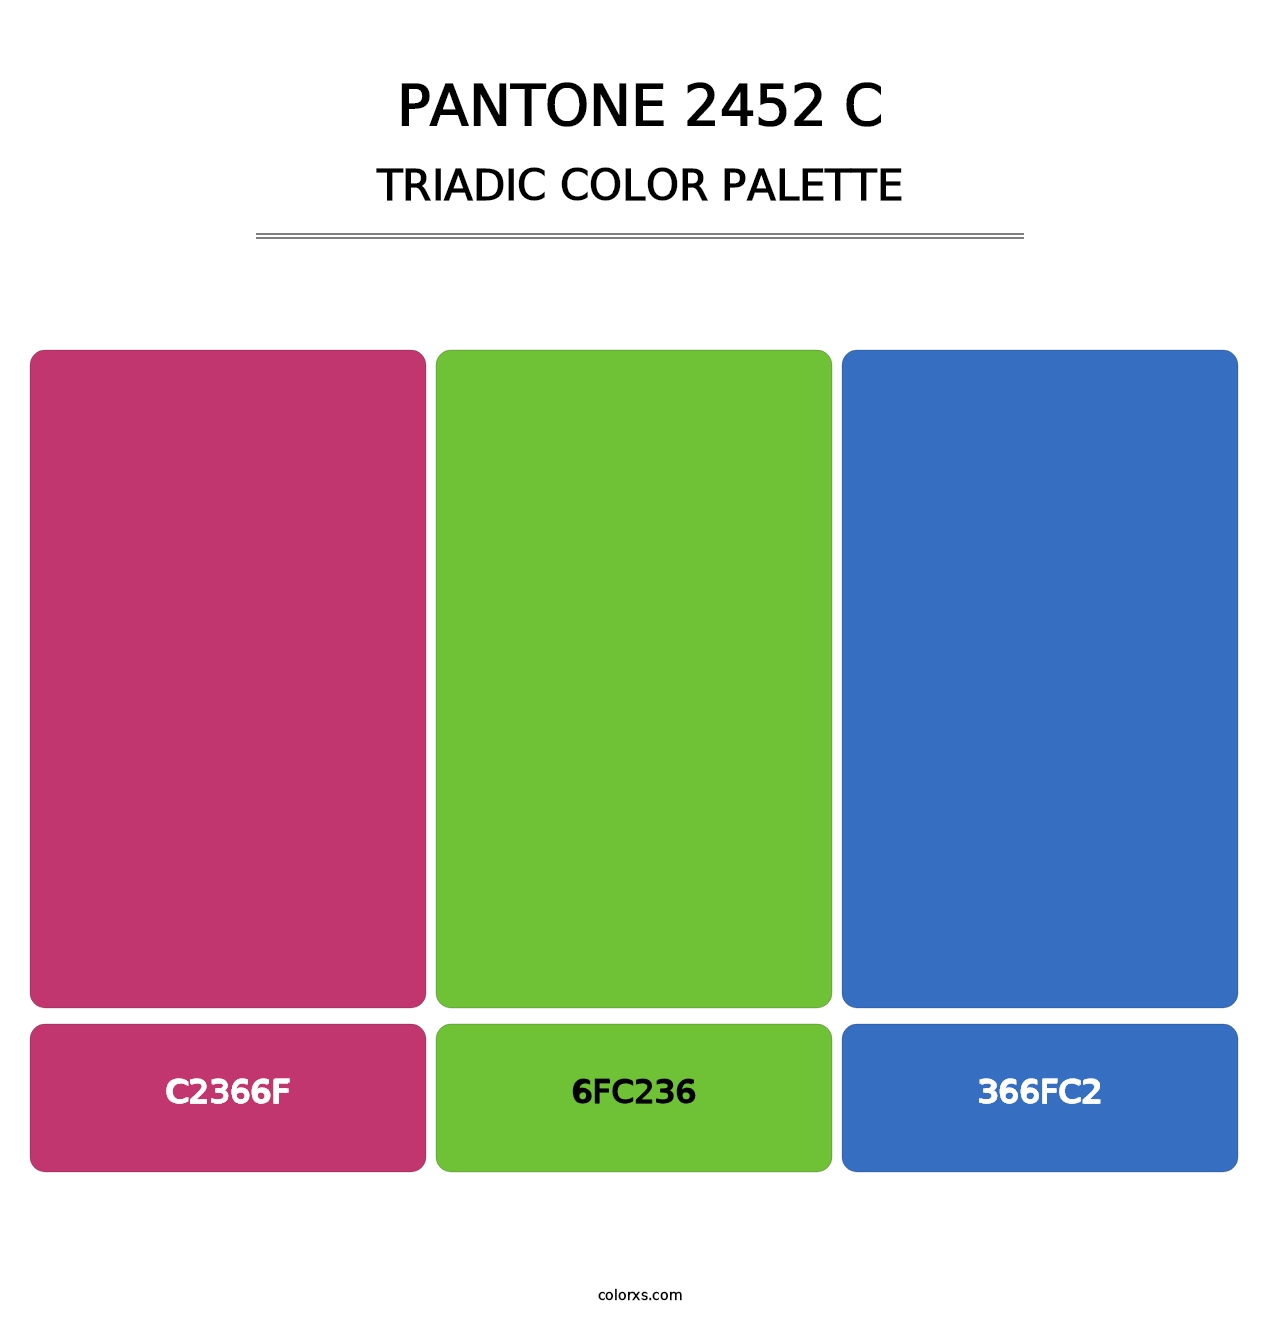 PANTONE 2452 C - Triadic Color Palette